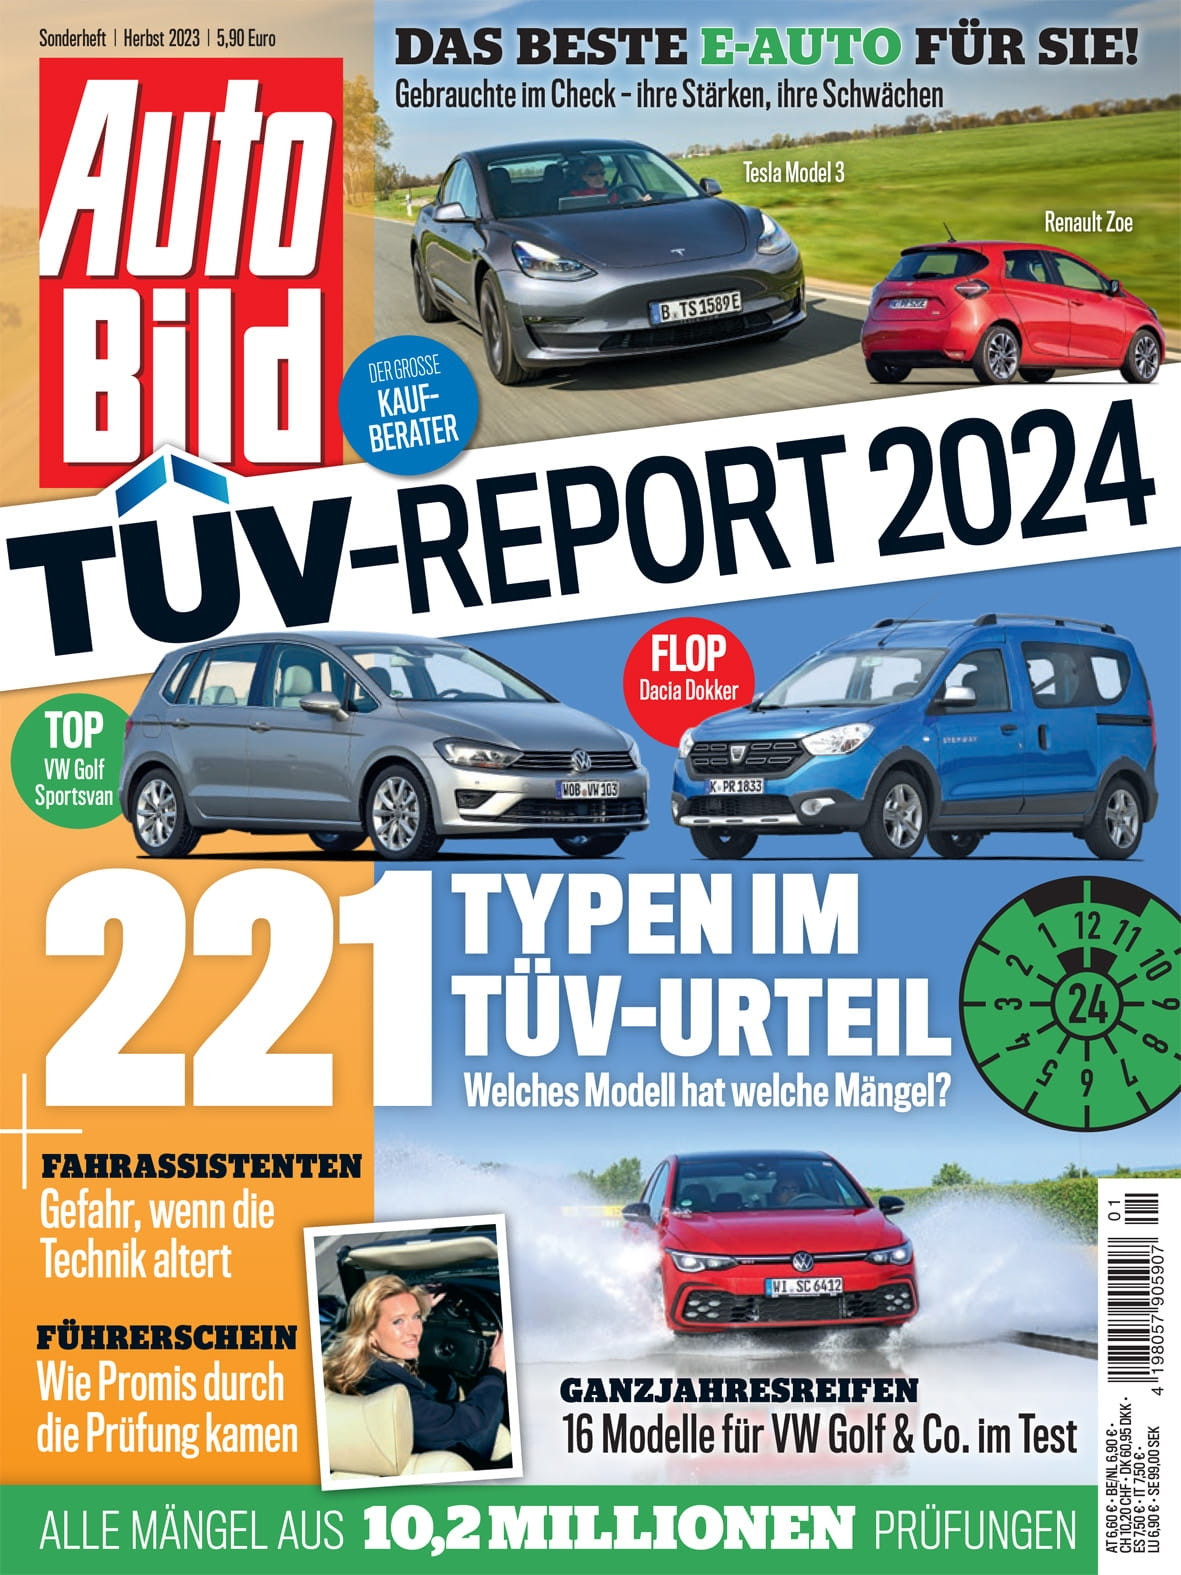 Der TÜV-Report ist in der AutoBild veröffentlich. 